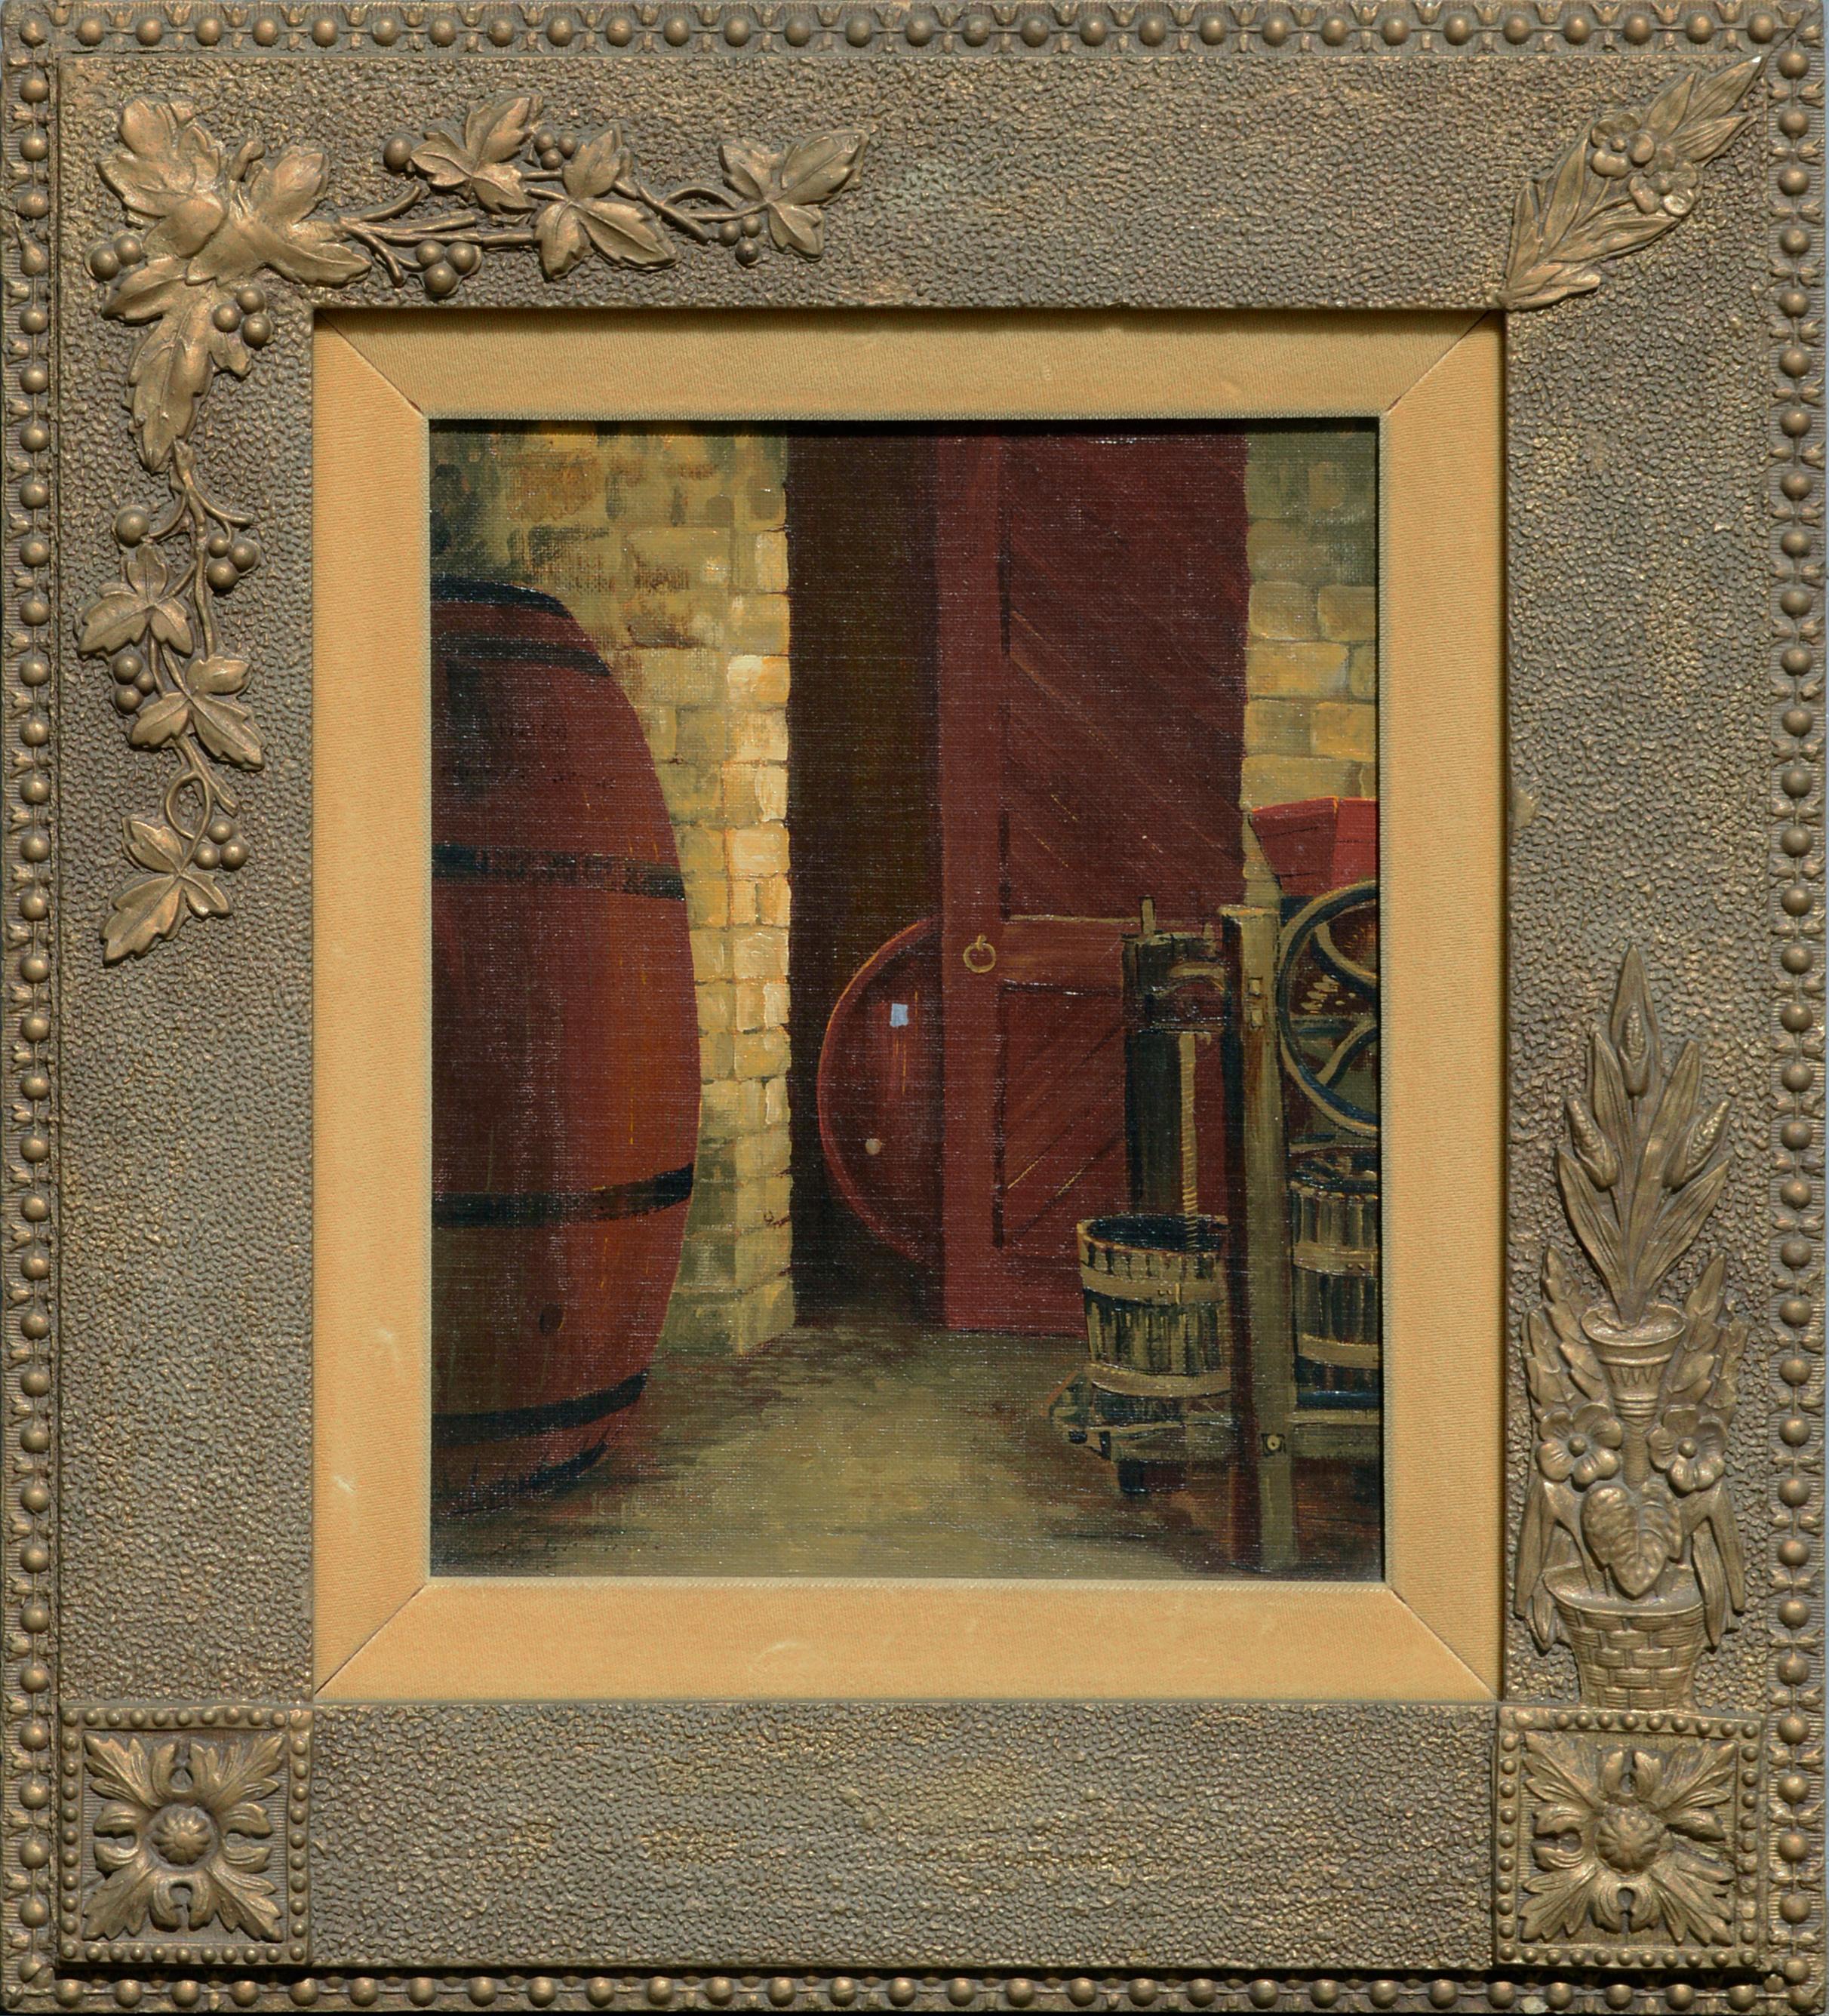 Oak Barrels in the Wine Cellar, Saratoga, California Mid Century Interior Scene 